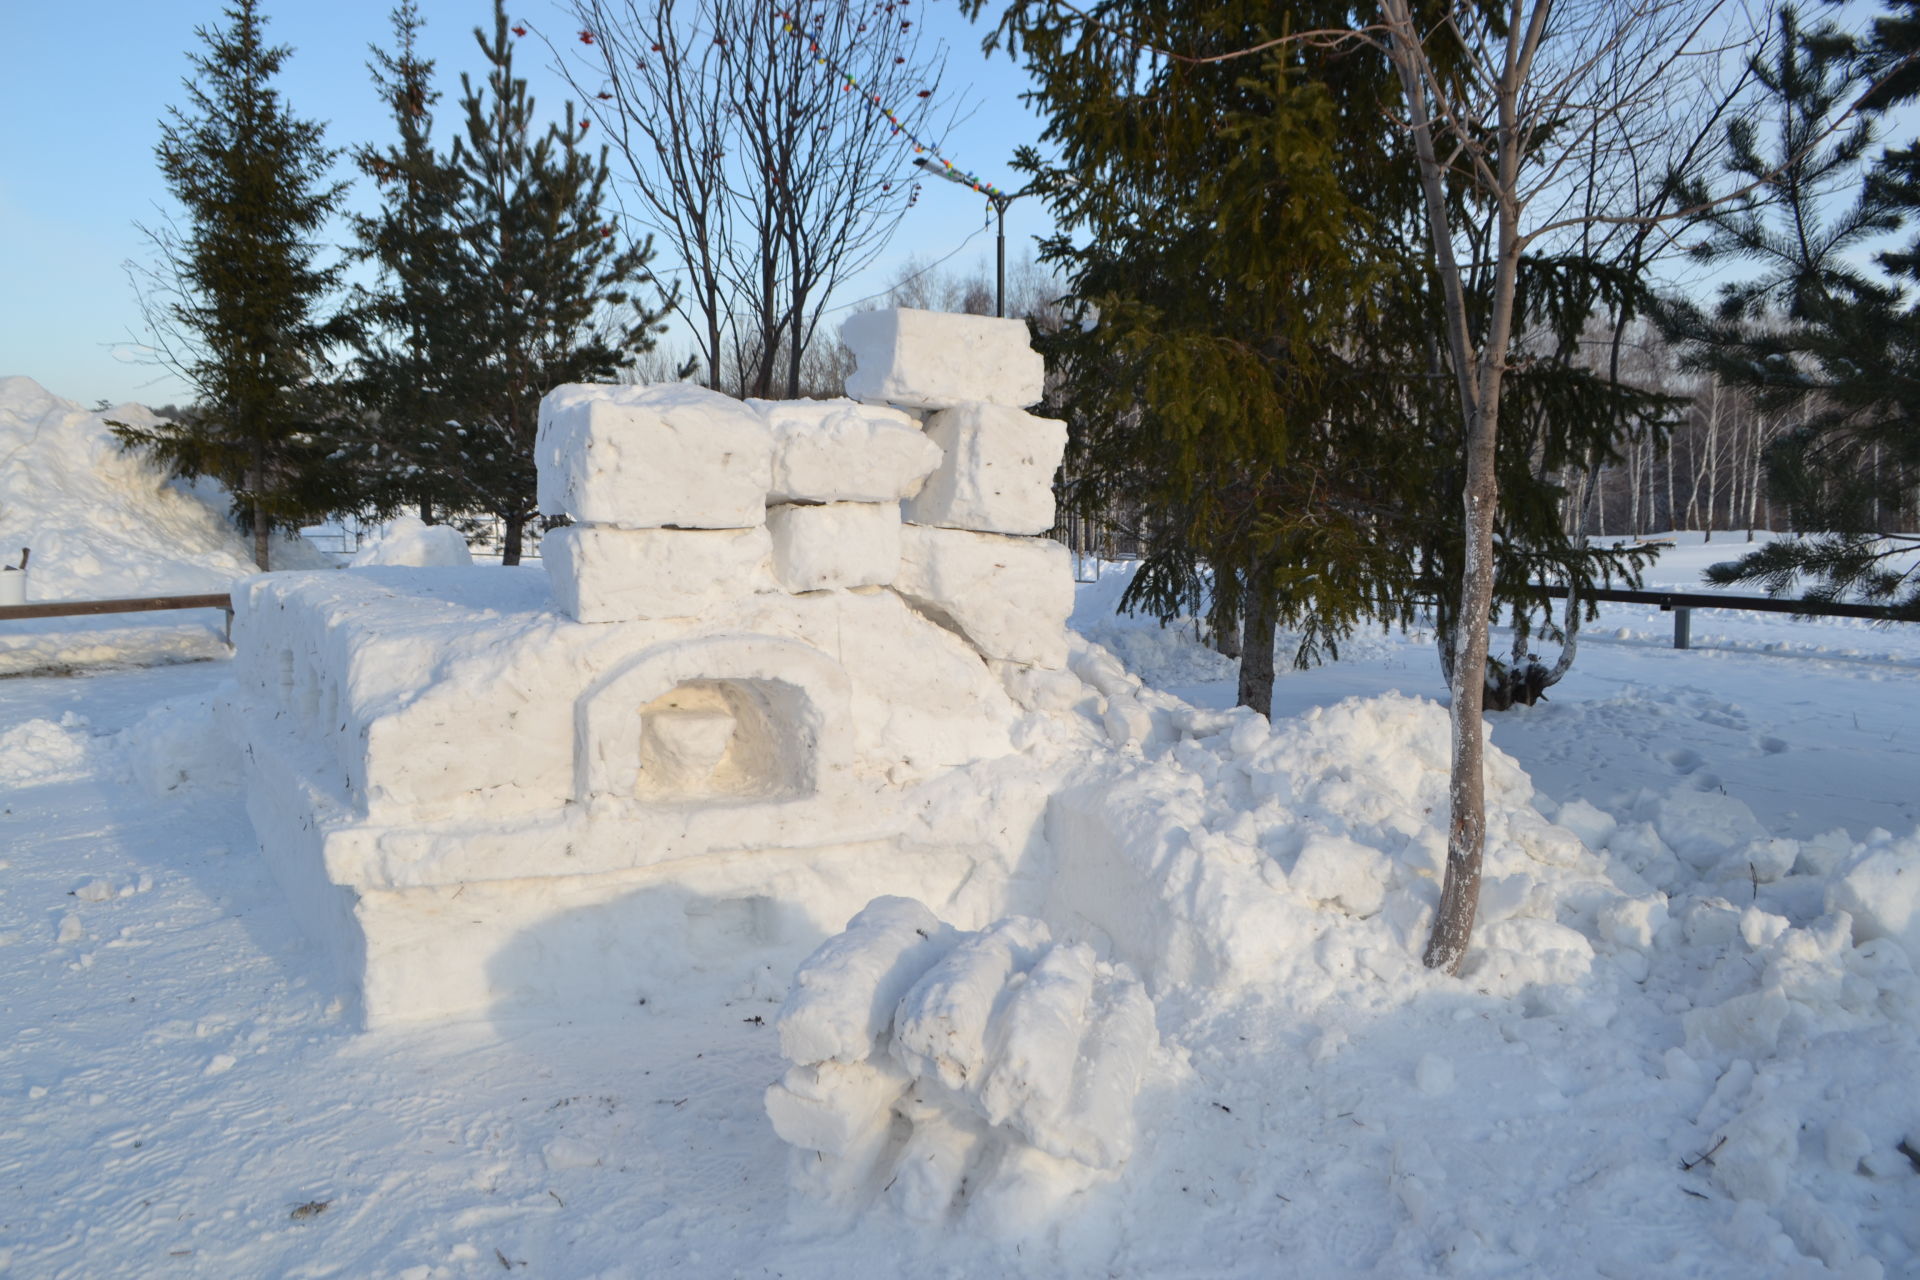 Красивые снежные скульптуры украсят в новогодний праздник Парк культуры и отдыха в Верхнем Услоне